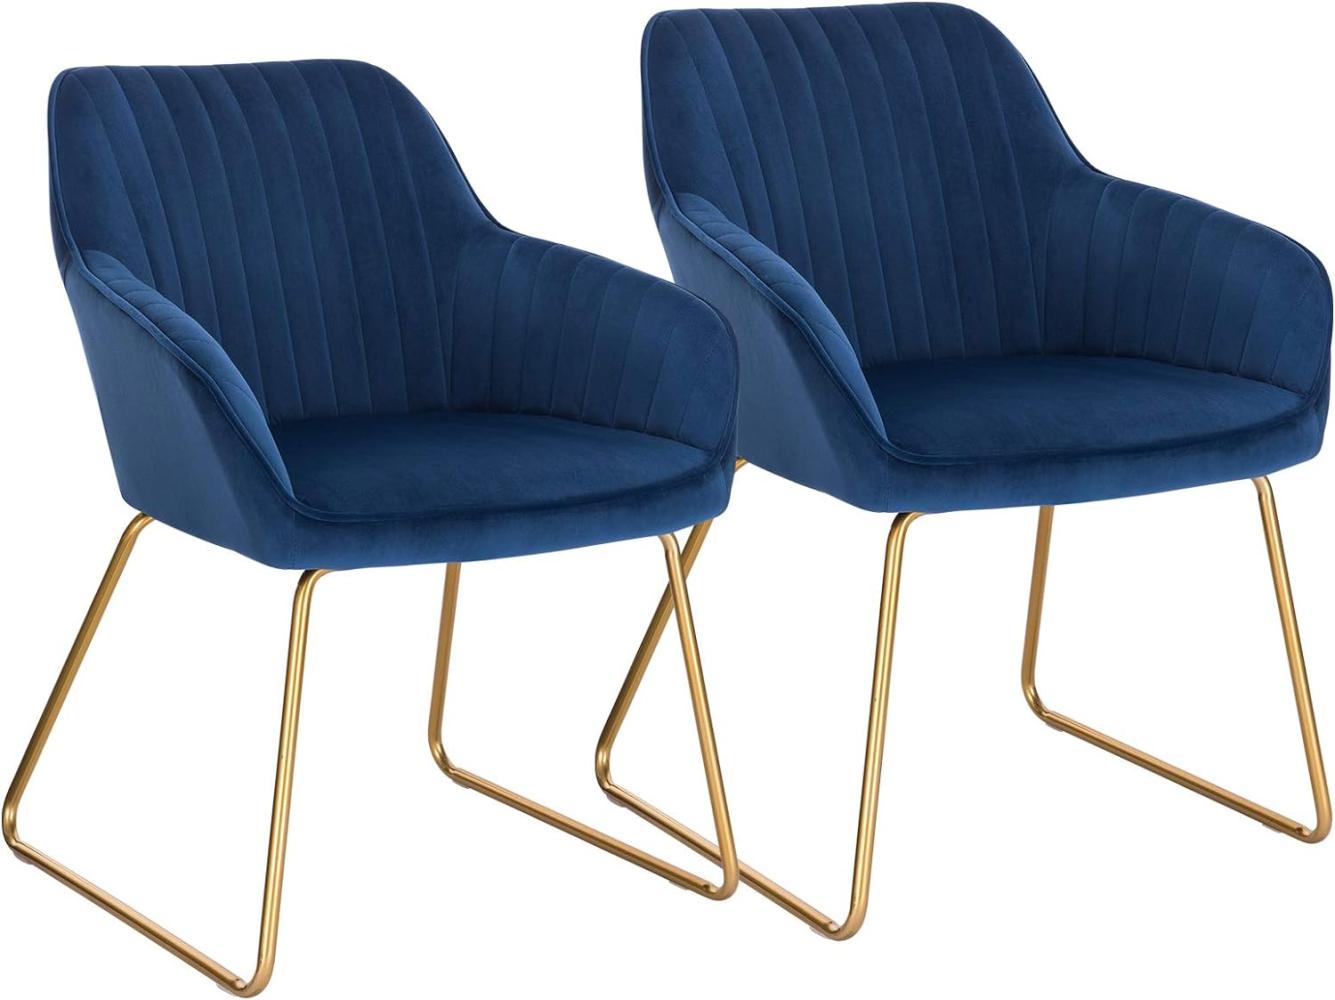 WOLTU Esszimmerstühle BH246bl-2 2er Set Küchenstuhl Polsterstuhl Wohnzimmerstuhl Sessel mit Armlehne, Sitzfläche aus Samt, Gold Beine aus Metall, Blau Bild 1